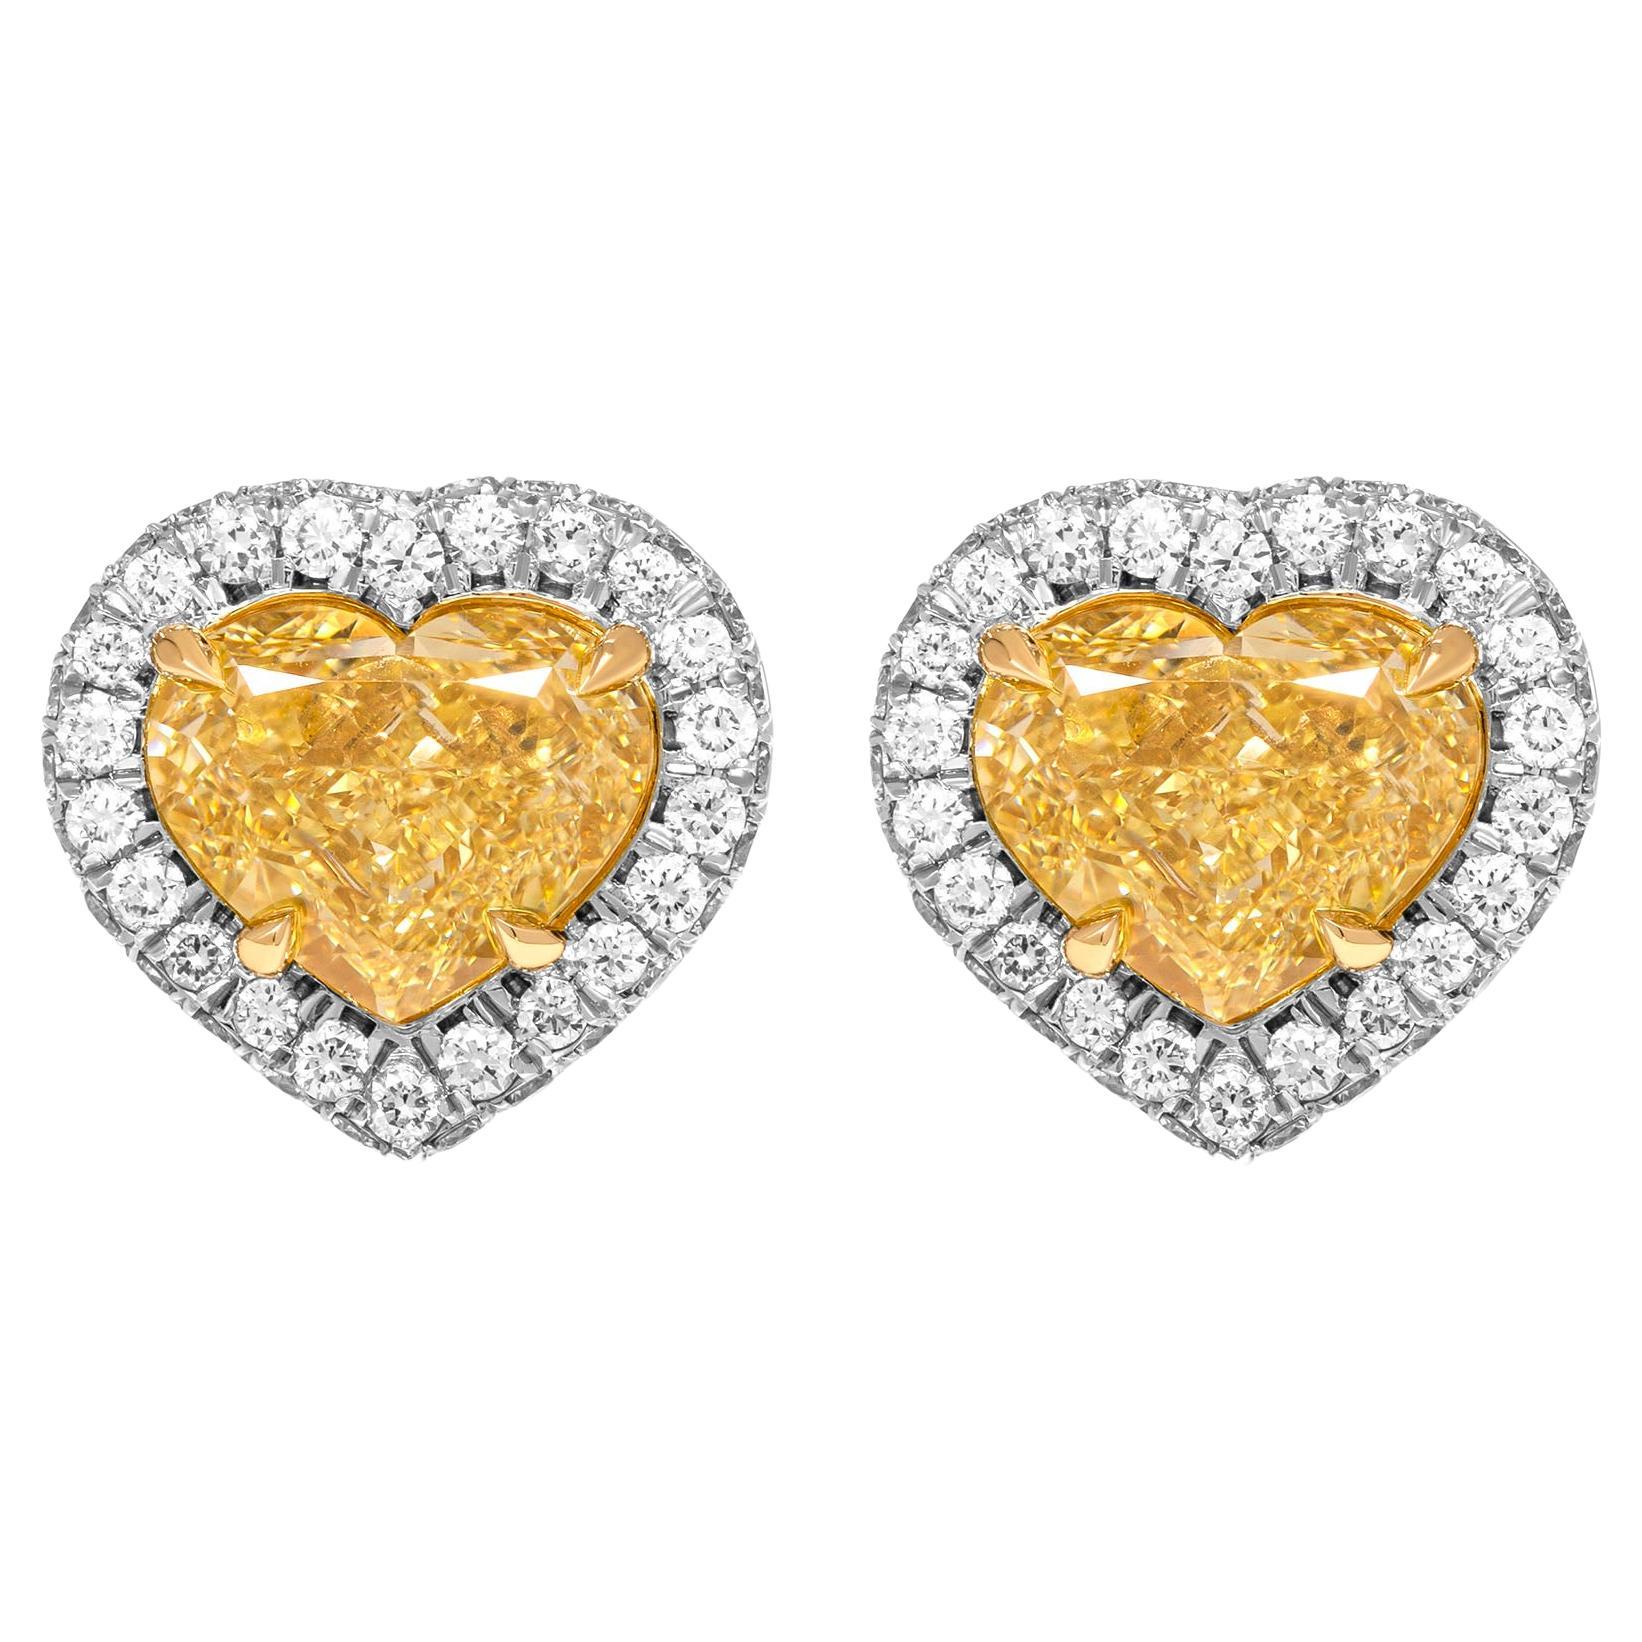 Boucles d'oreilles Halo certifiées GIA avec diamants en forme de cœur de couleur jaune fantaisie